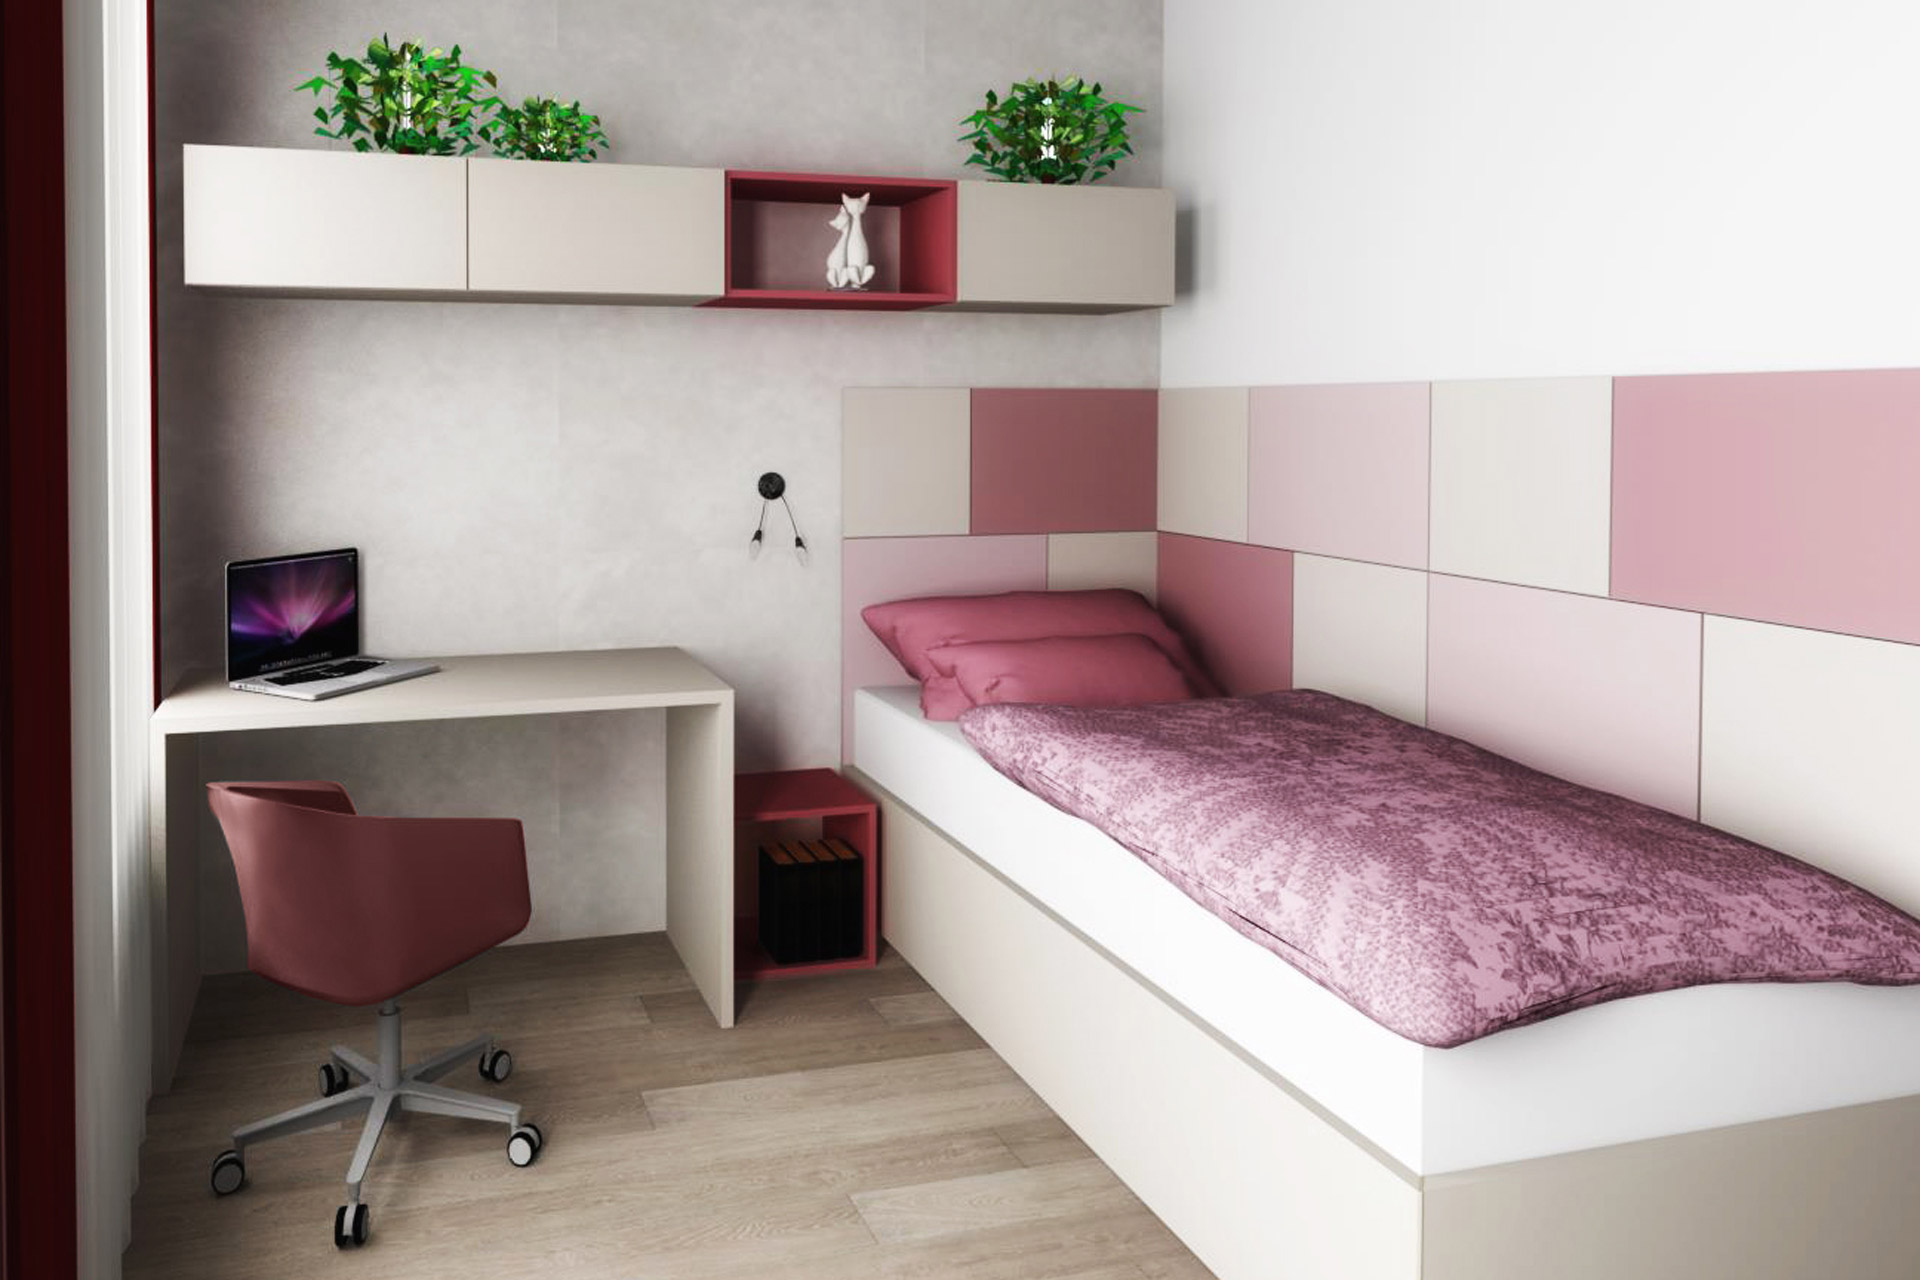 Hanák Furniture Design of rooms